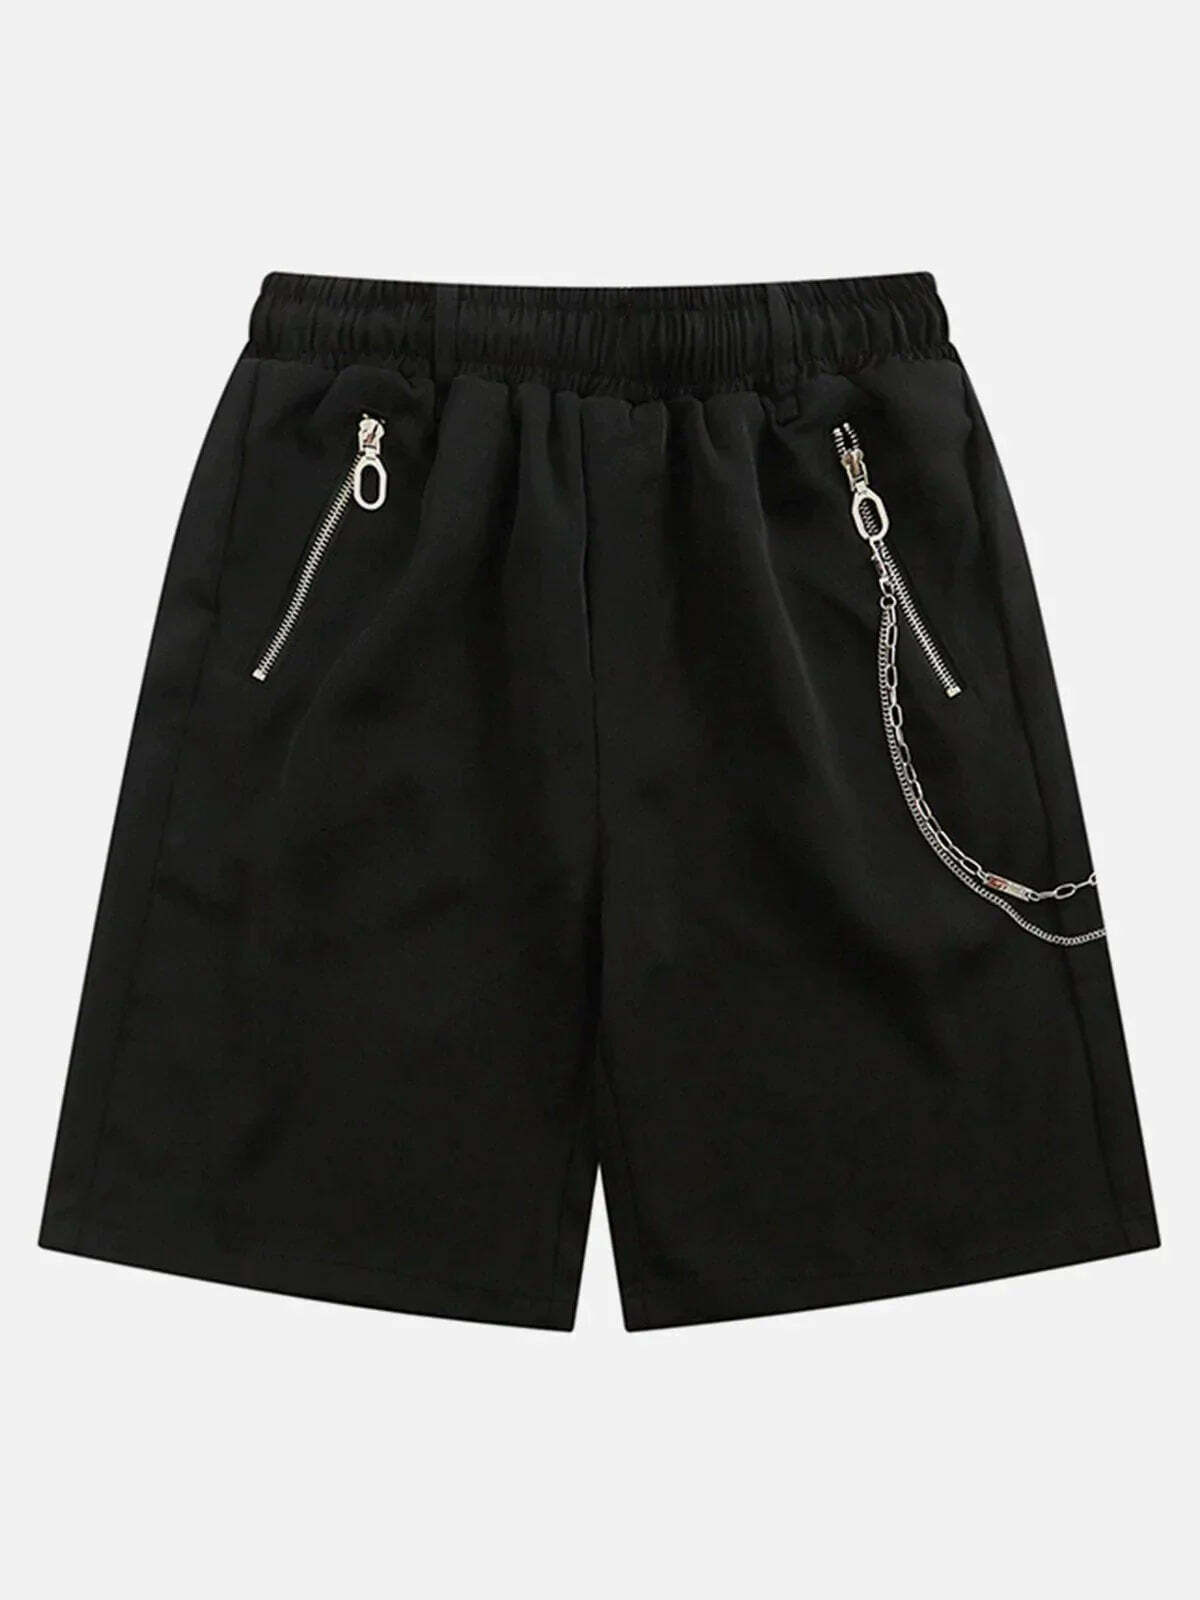 zipup chain shorts edgy y2k streetwear 8804